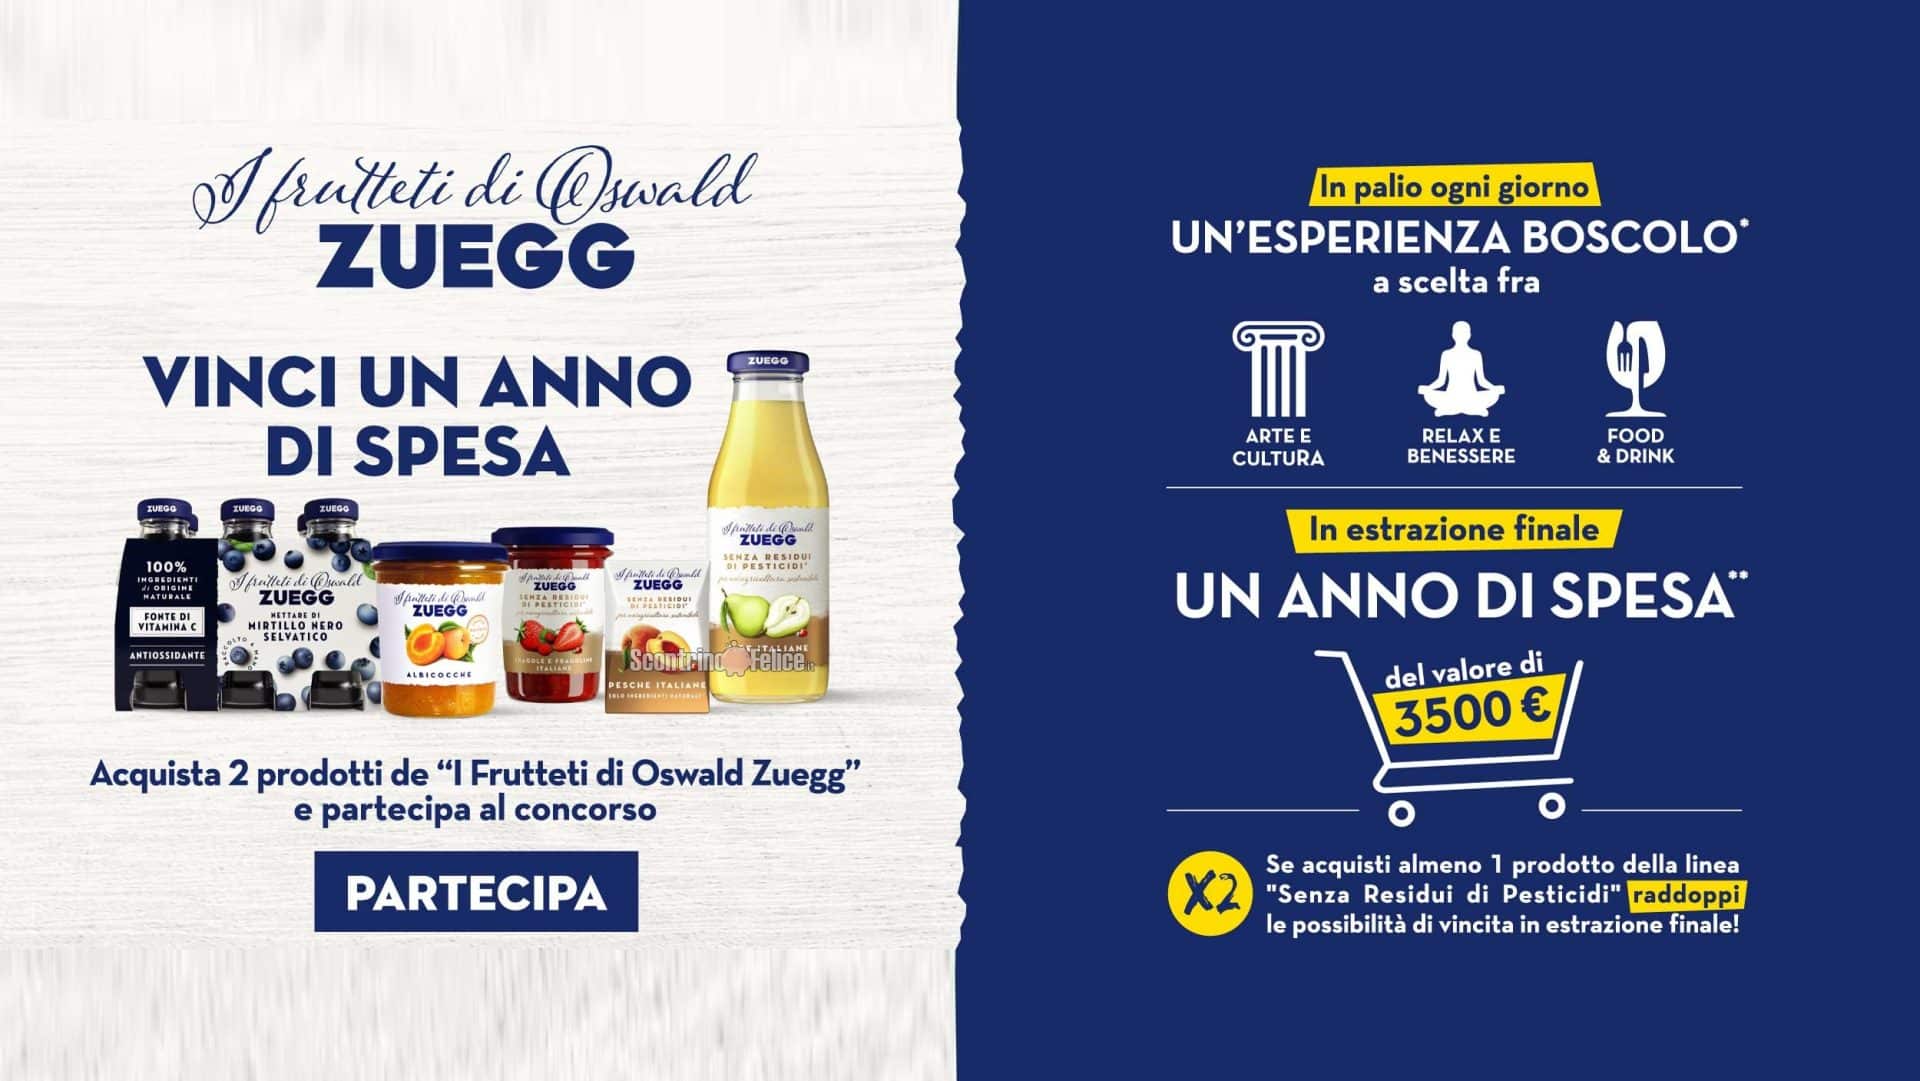 Concorso Zuegg "Vinci un anno di spesa": in palio cofanetti Boscolo e 3.500 euro in buoni spesa!